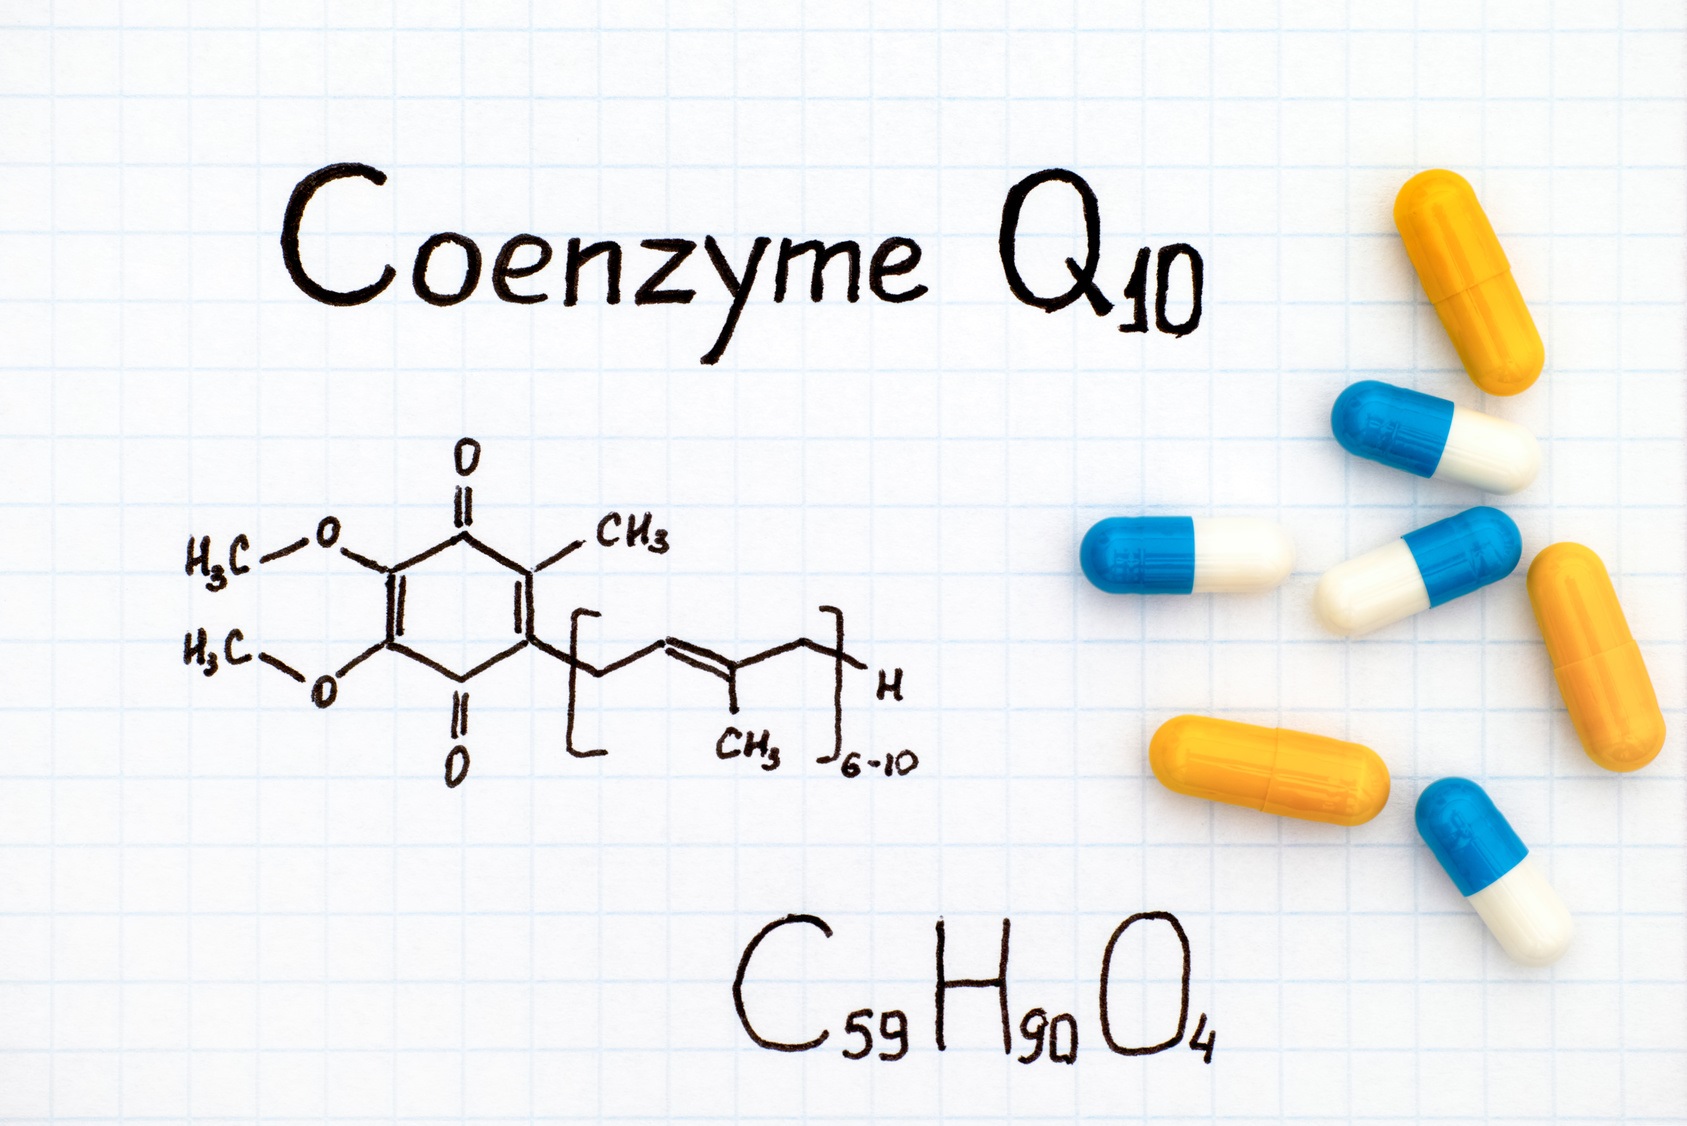 Certains coenzymes, comme le coenzyme Q10, sont vendus comme compléments alimentaires. © rosinka79, Fotolia